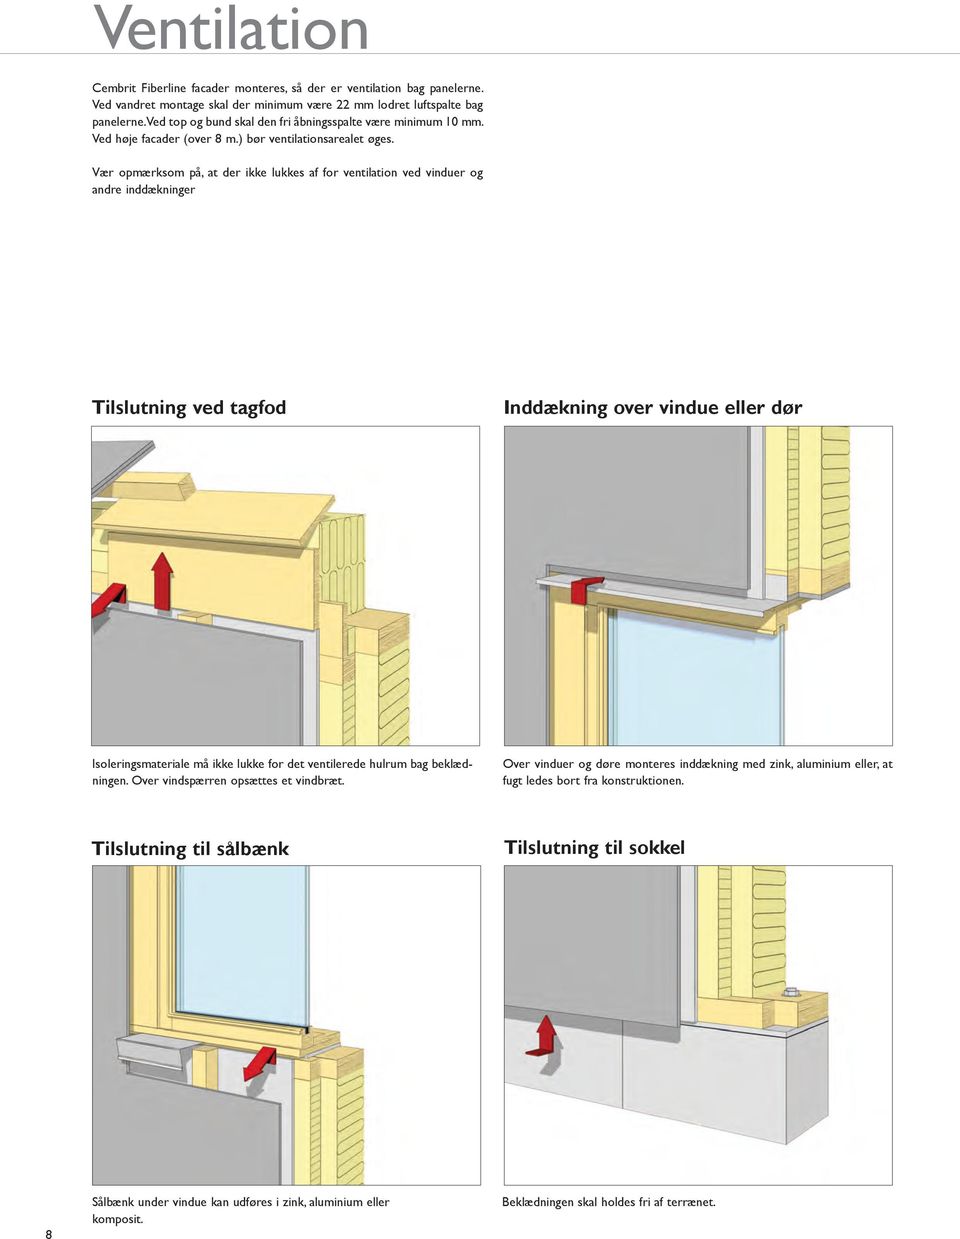 Vær opmærksom på, at der ikke lukkes af for ventilation ved vinduer og andre inddækninger Tilslutning ved tagfod Inddækning over vindue eller dør Isoleringsmateriale må ikke lukke for det ventilerede